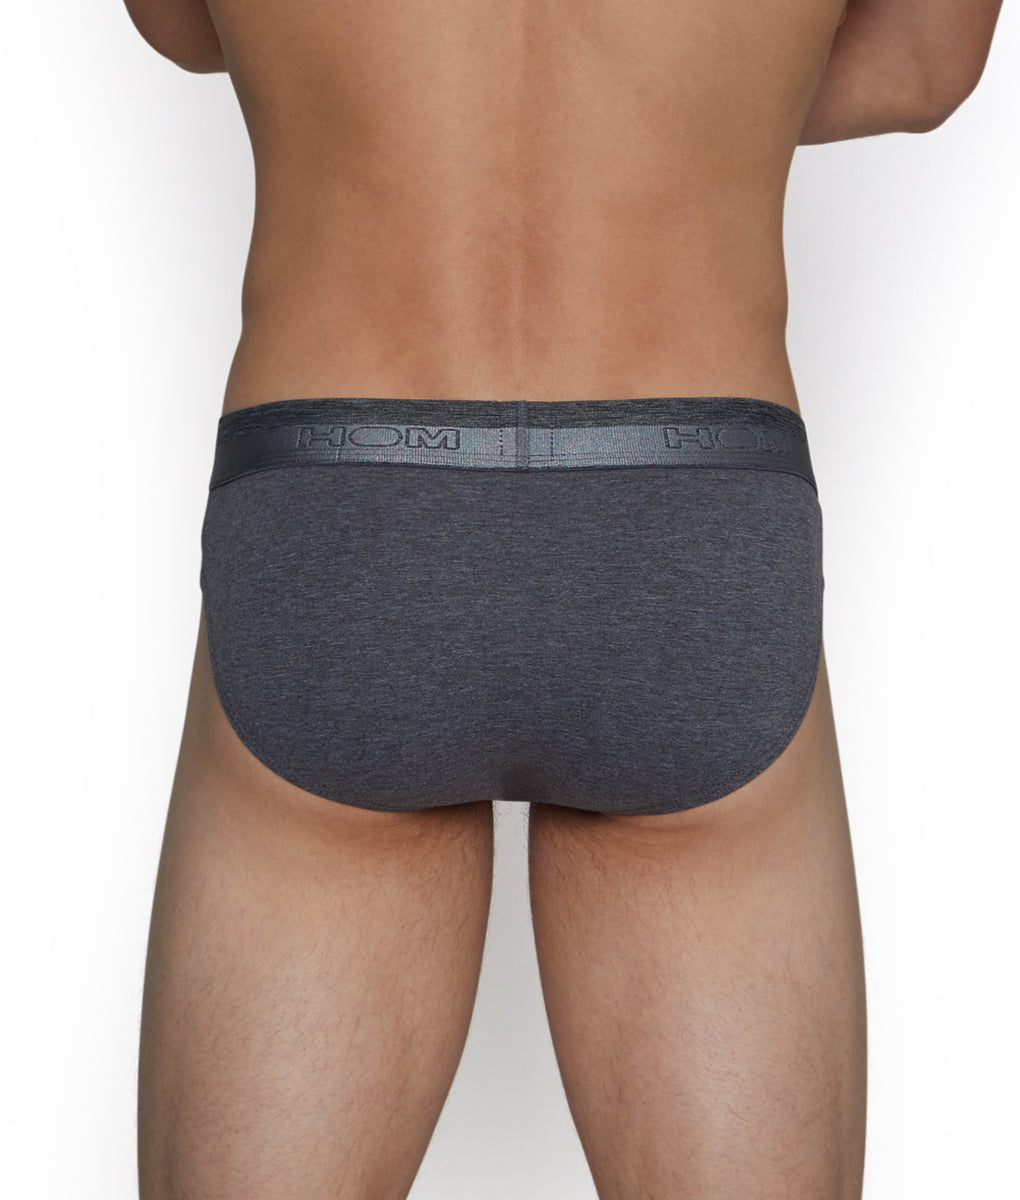 Underwear Expert - Classic grey briefs by Hom. Underwear your mirror will  love. #underwearexpert